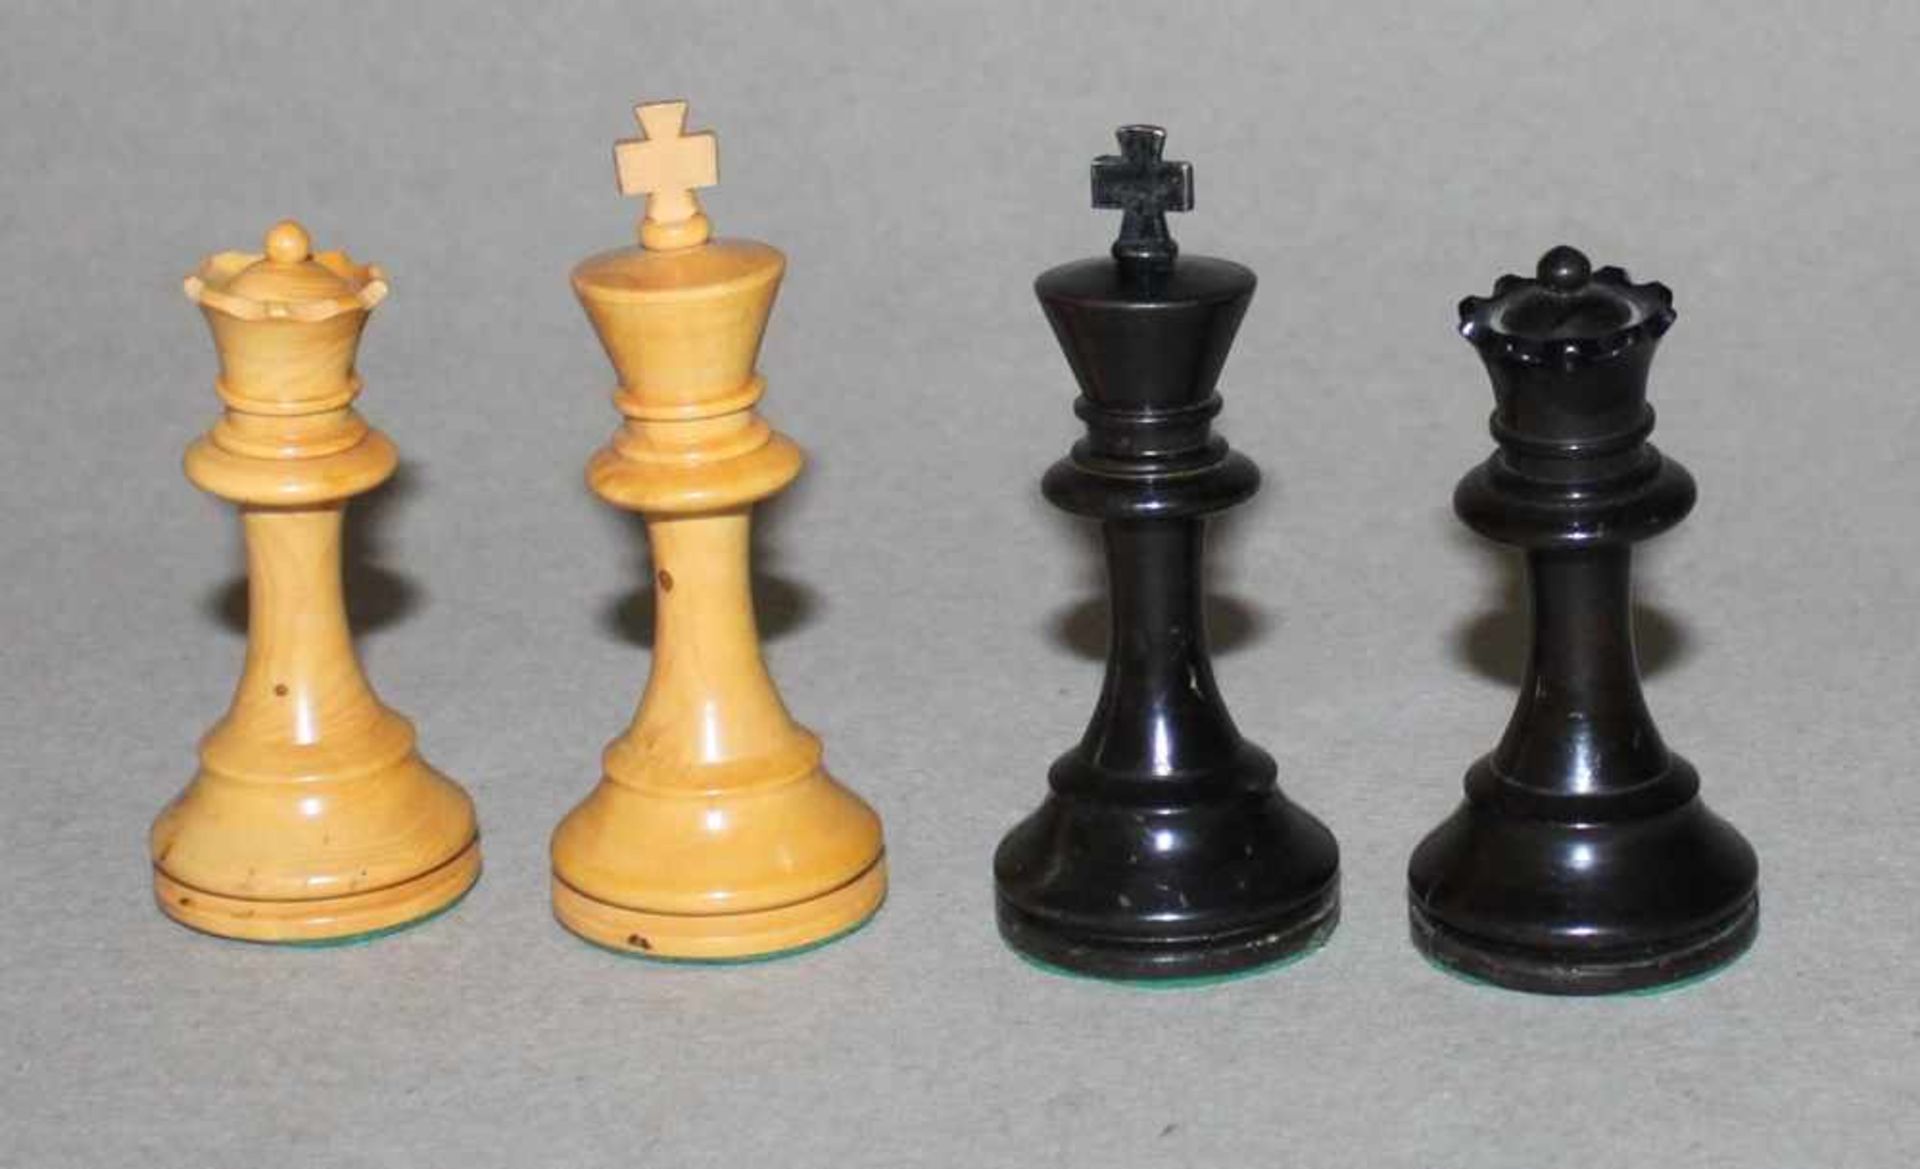 Europa. Zwei Staunton Schachspiele aus Holz.Eine Partei in schwarz, die andere naturfarben.